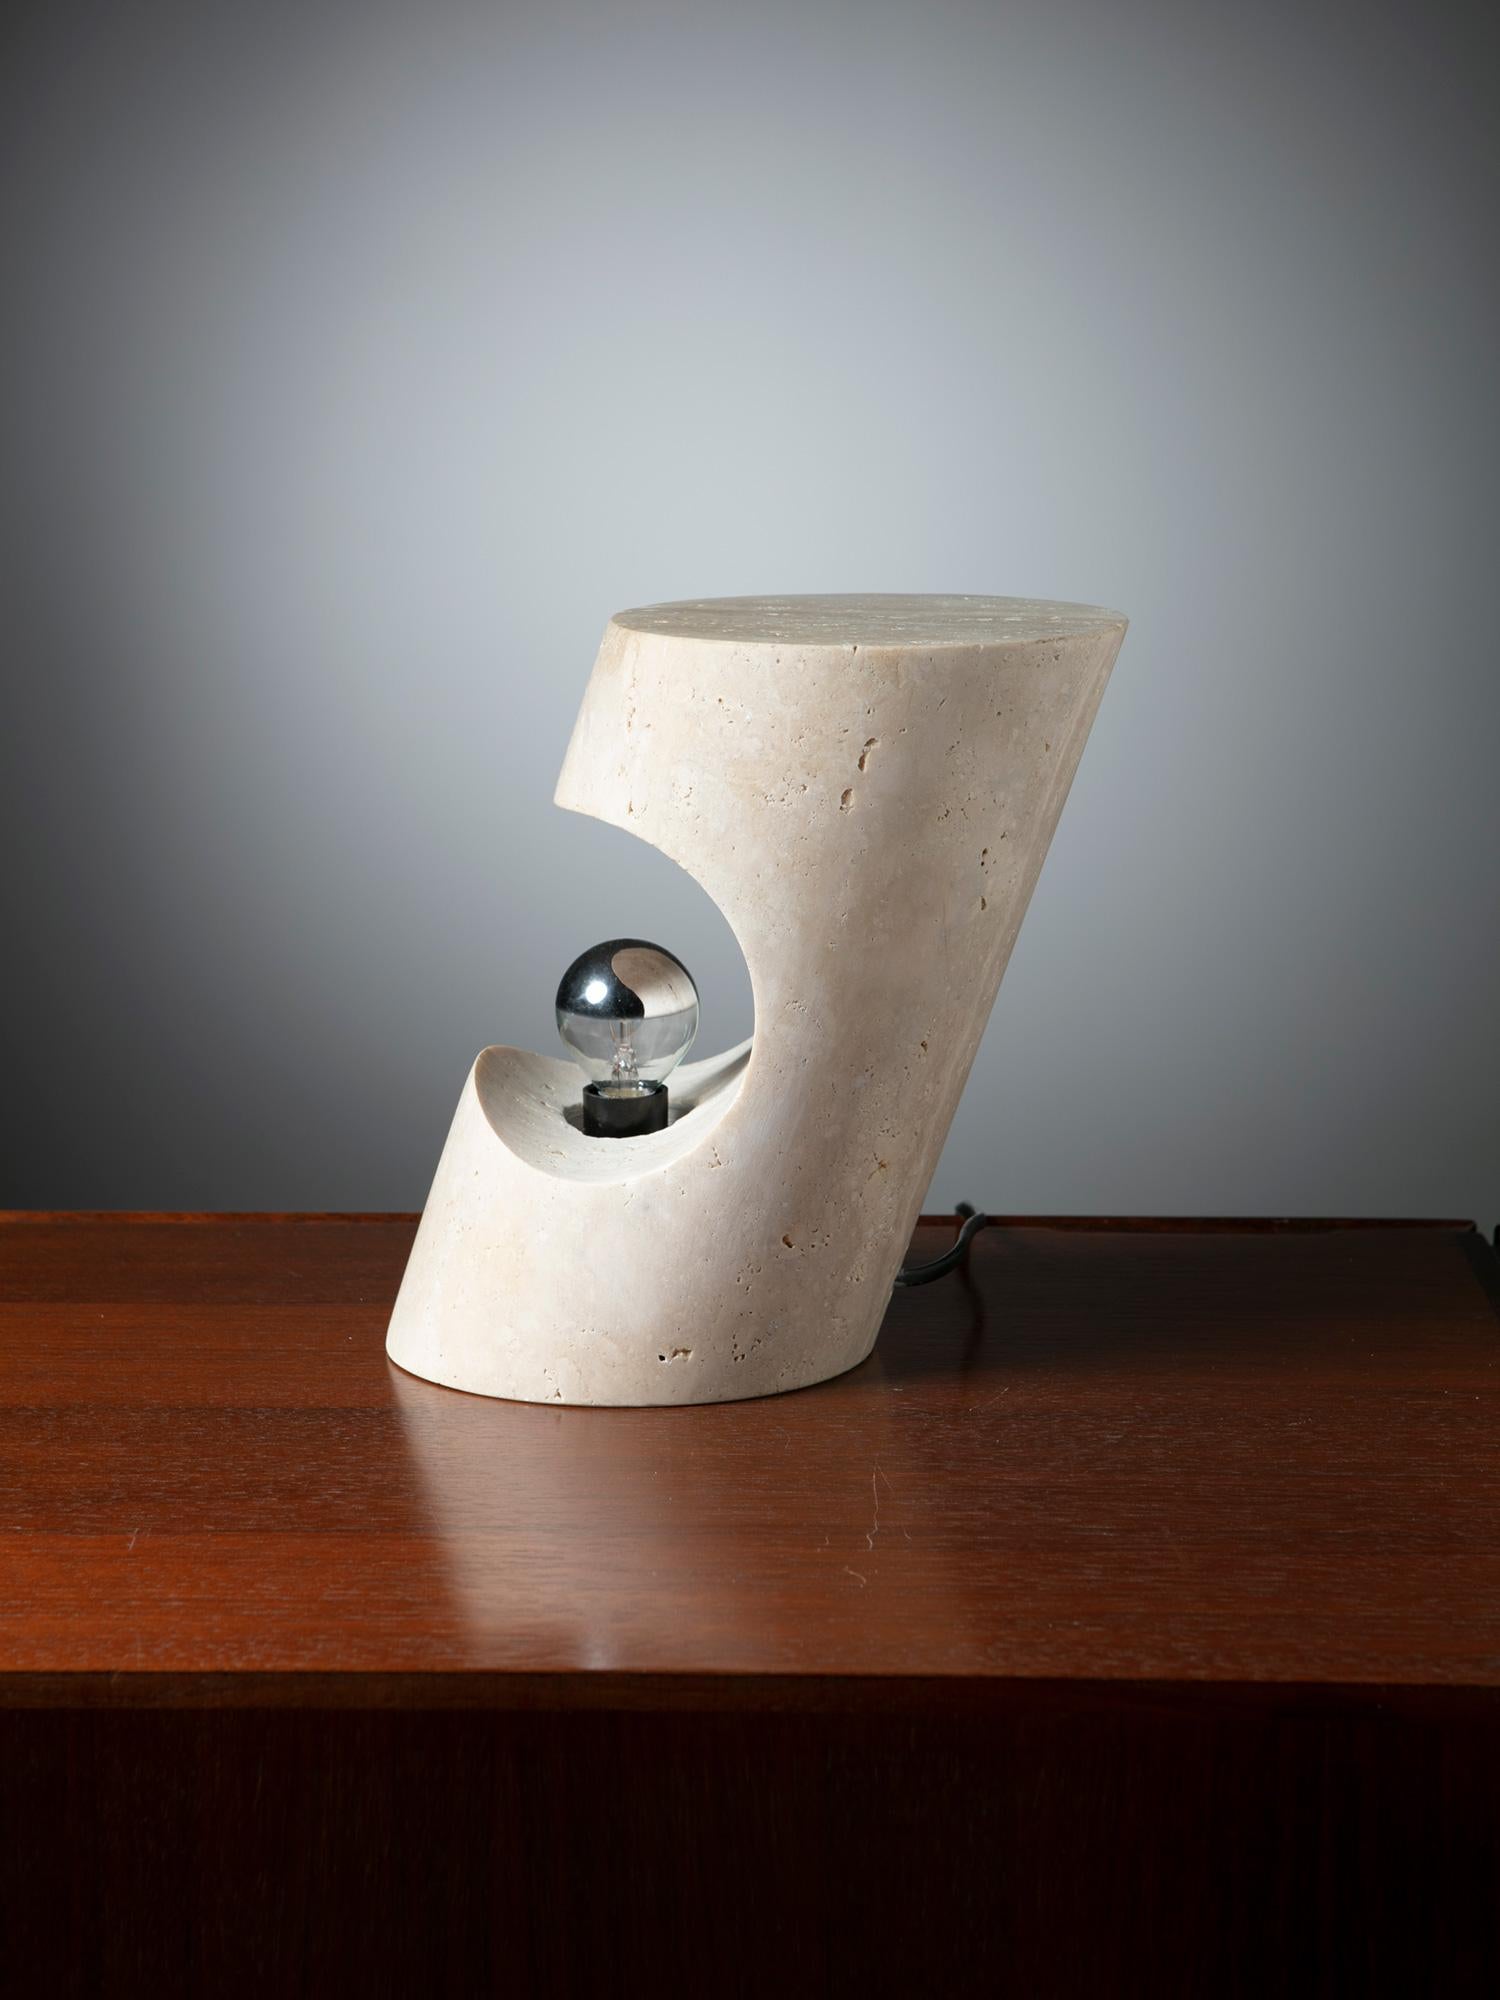 Lampe sculpturale de Giuliano Cesari pour Nucleo - Sormani.
Bloc de travertin massif. D'autres pièces sont disponibles dans la même famille de pierres (voir photo 5).